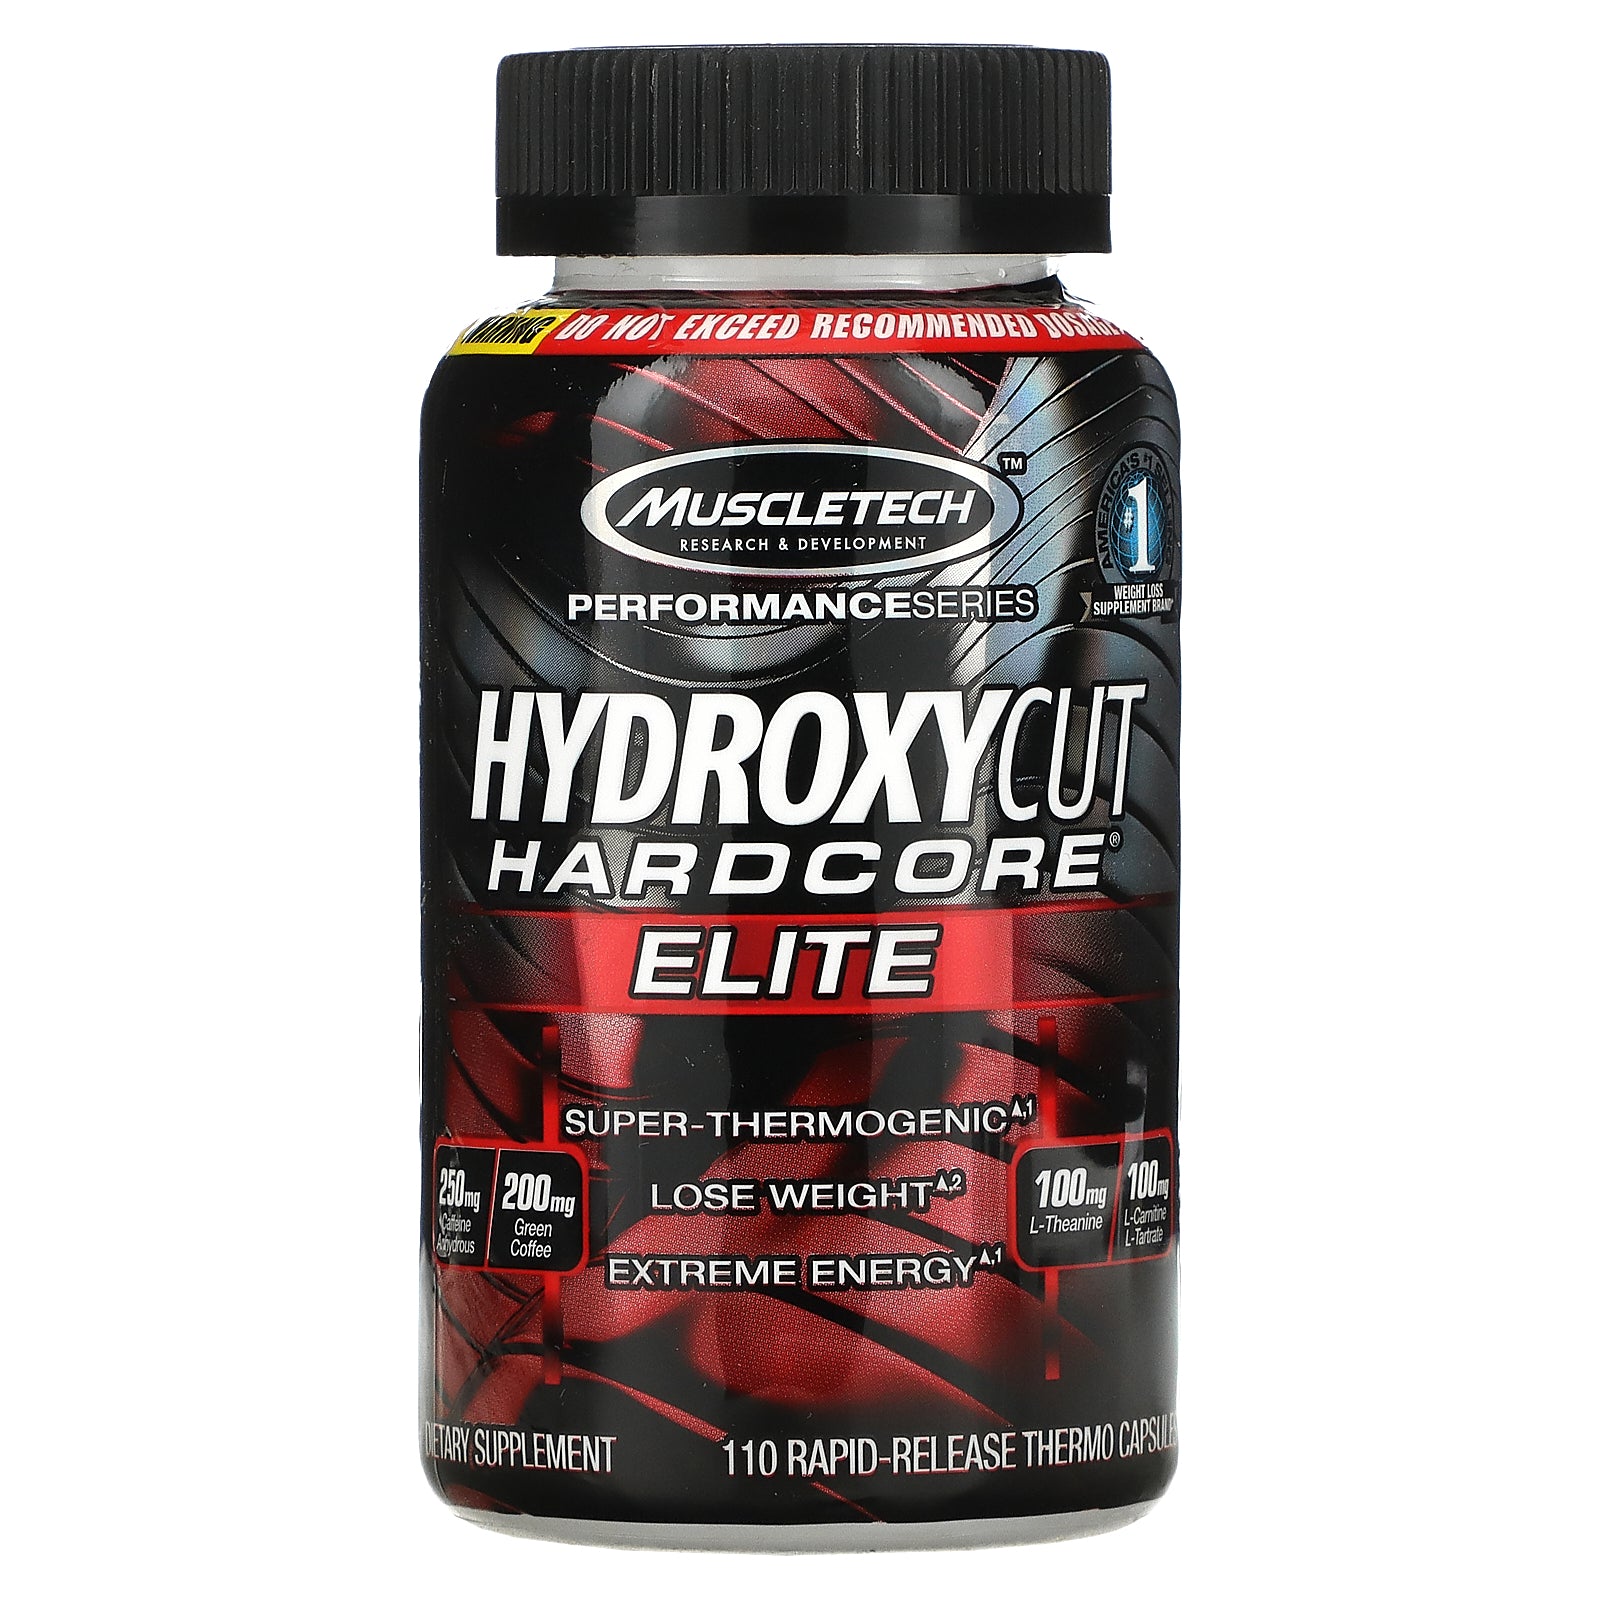 Hydroxycut, Hardcore Elite